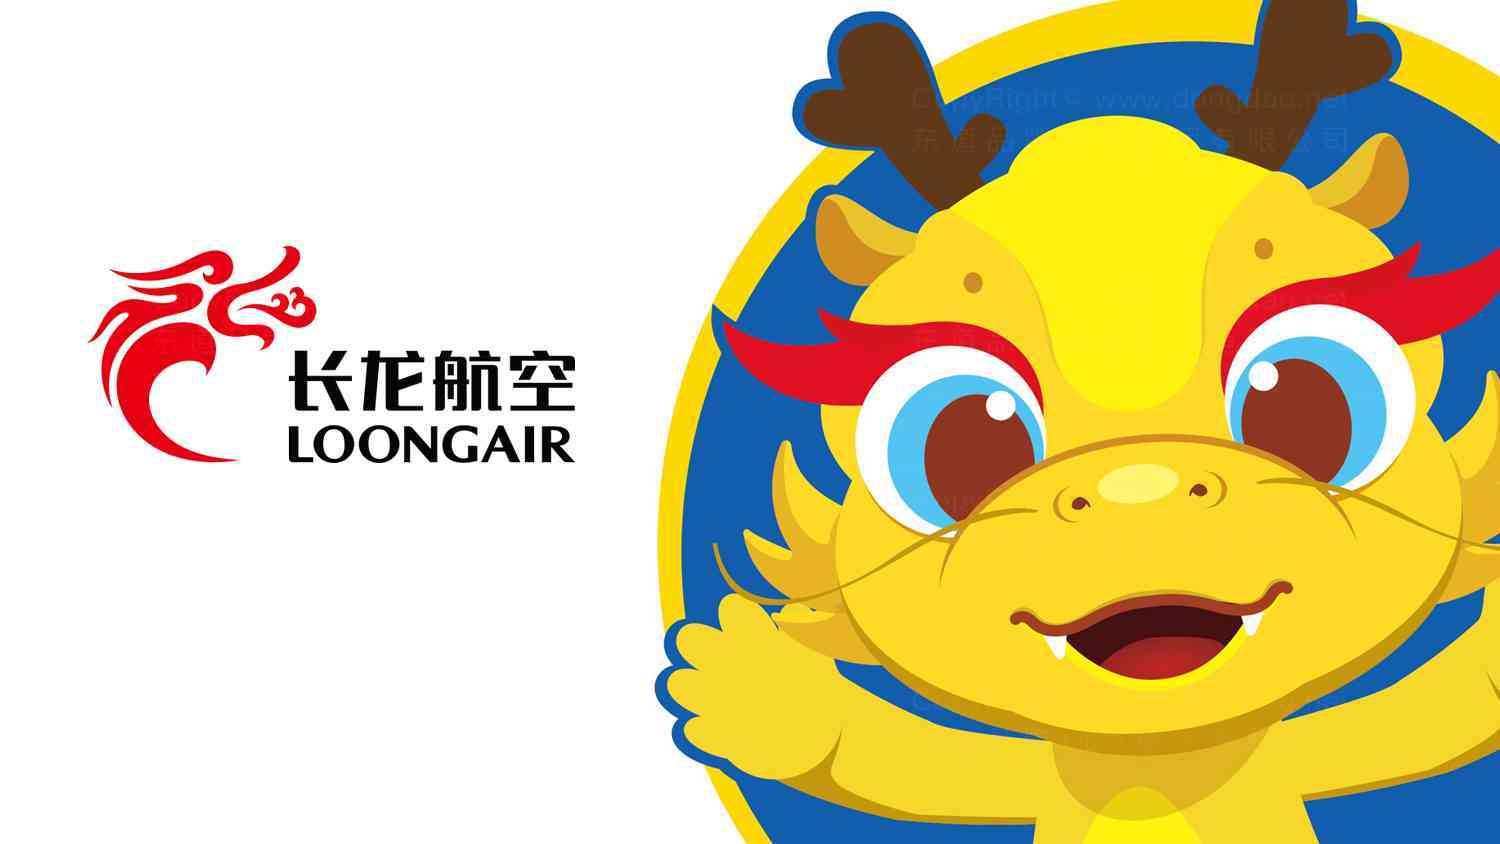 長龍航空航空公司吉祥物設計圖片素材